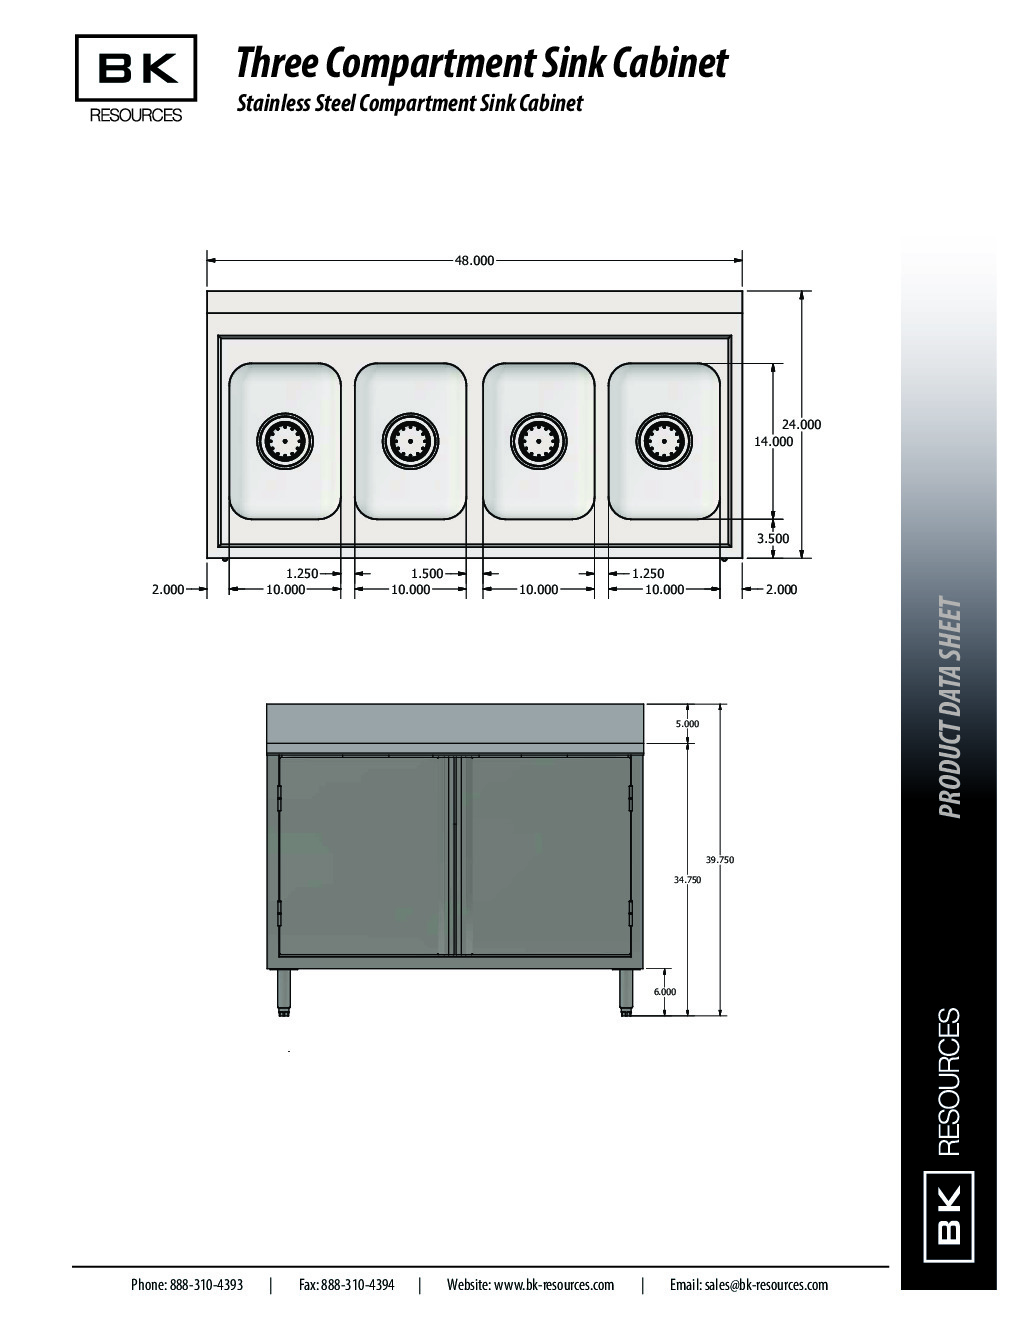 BK Resources CSTR5-4-1014 (4) Four Compartment Sink